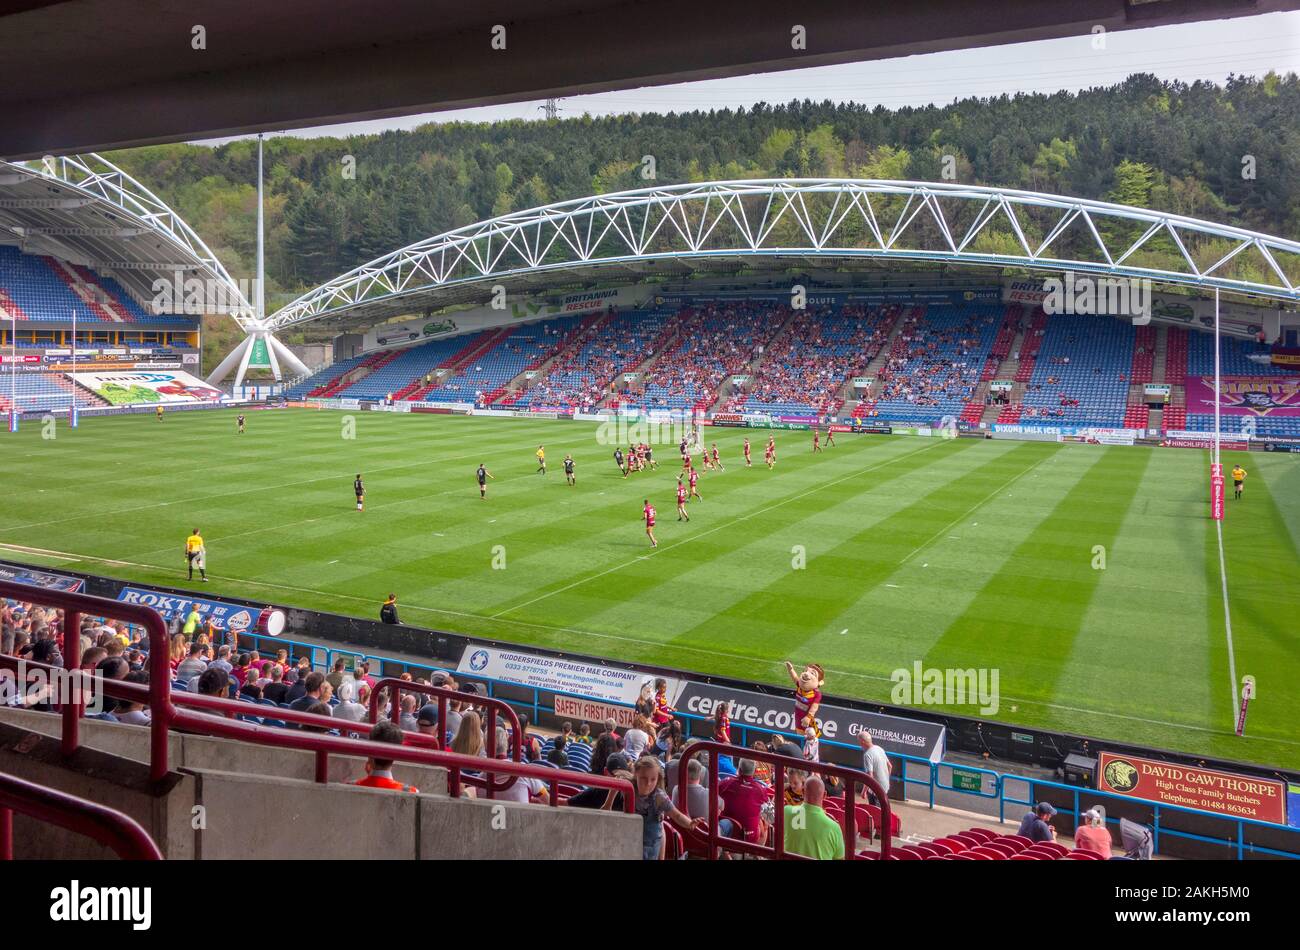 Vue depuis les tribunes d'un match de rugby entre Huddersfield Giants et London Broncos, John Smith's Stadium, Huddersfield, West Yorkshire, Royaume-Uni Banque D'Images